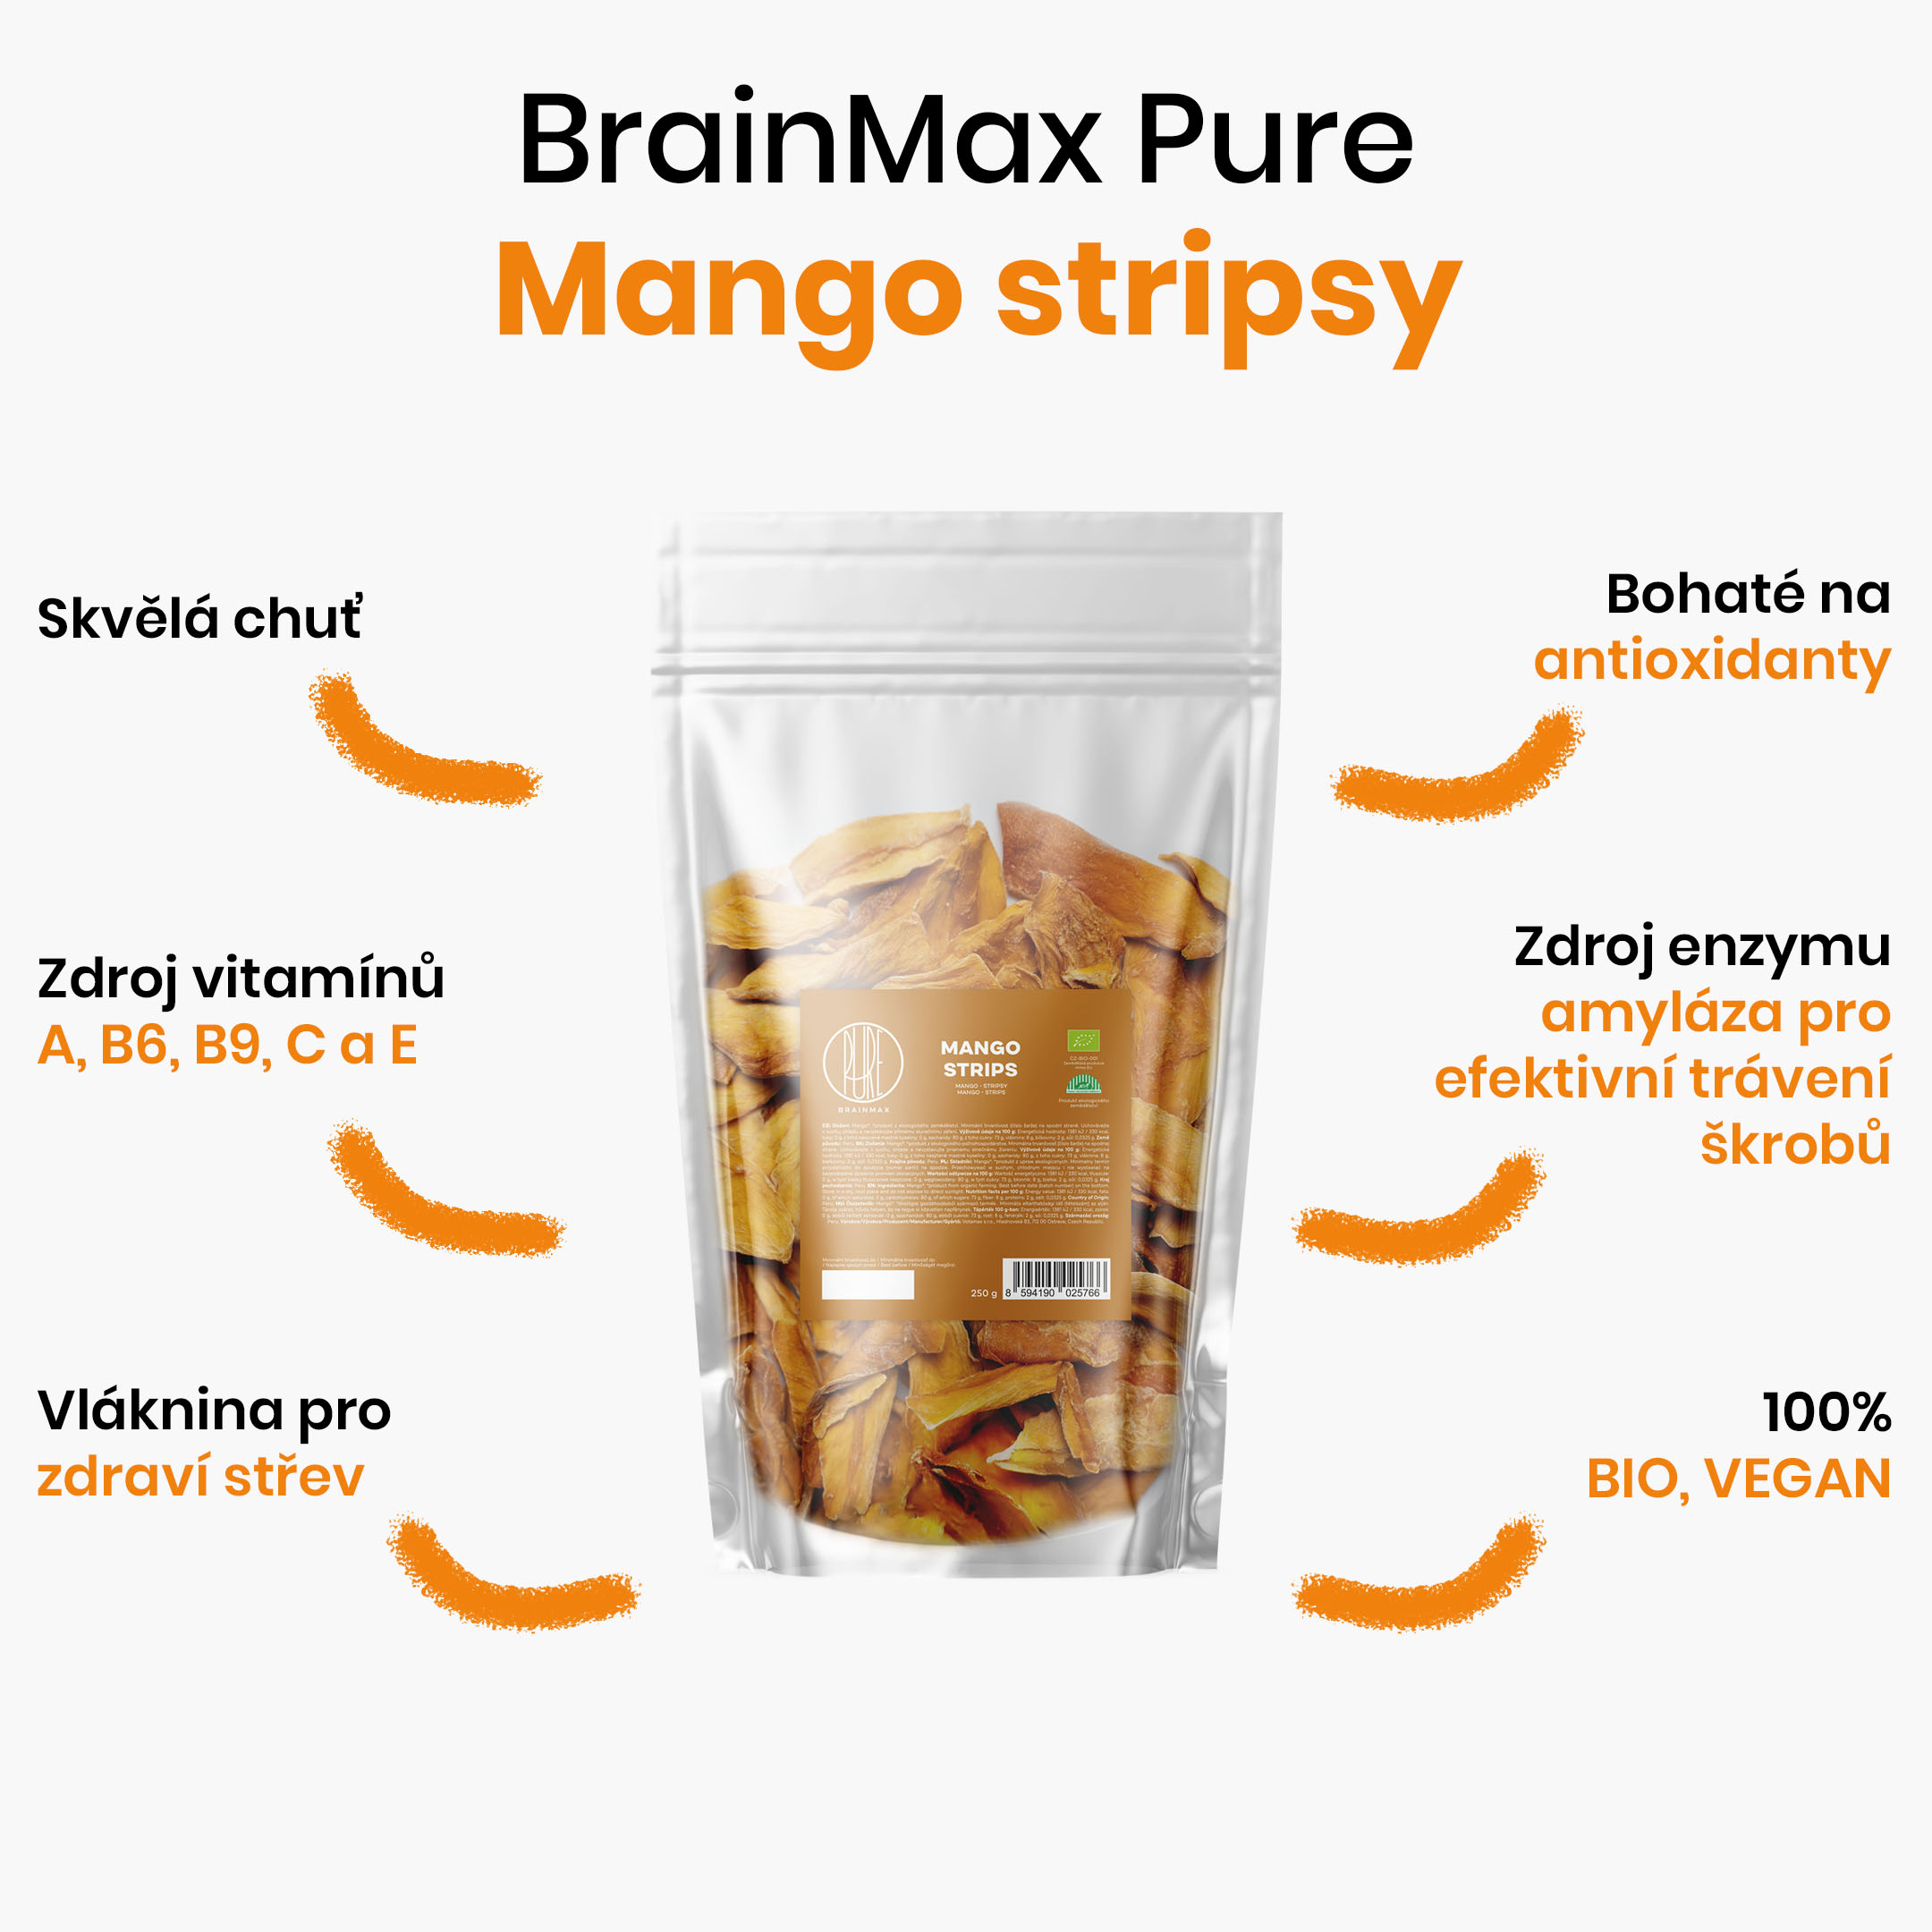 BrainMax Pure Mango, BIO, stripsy 250 g *CZ-BIO-001 certifikát